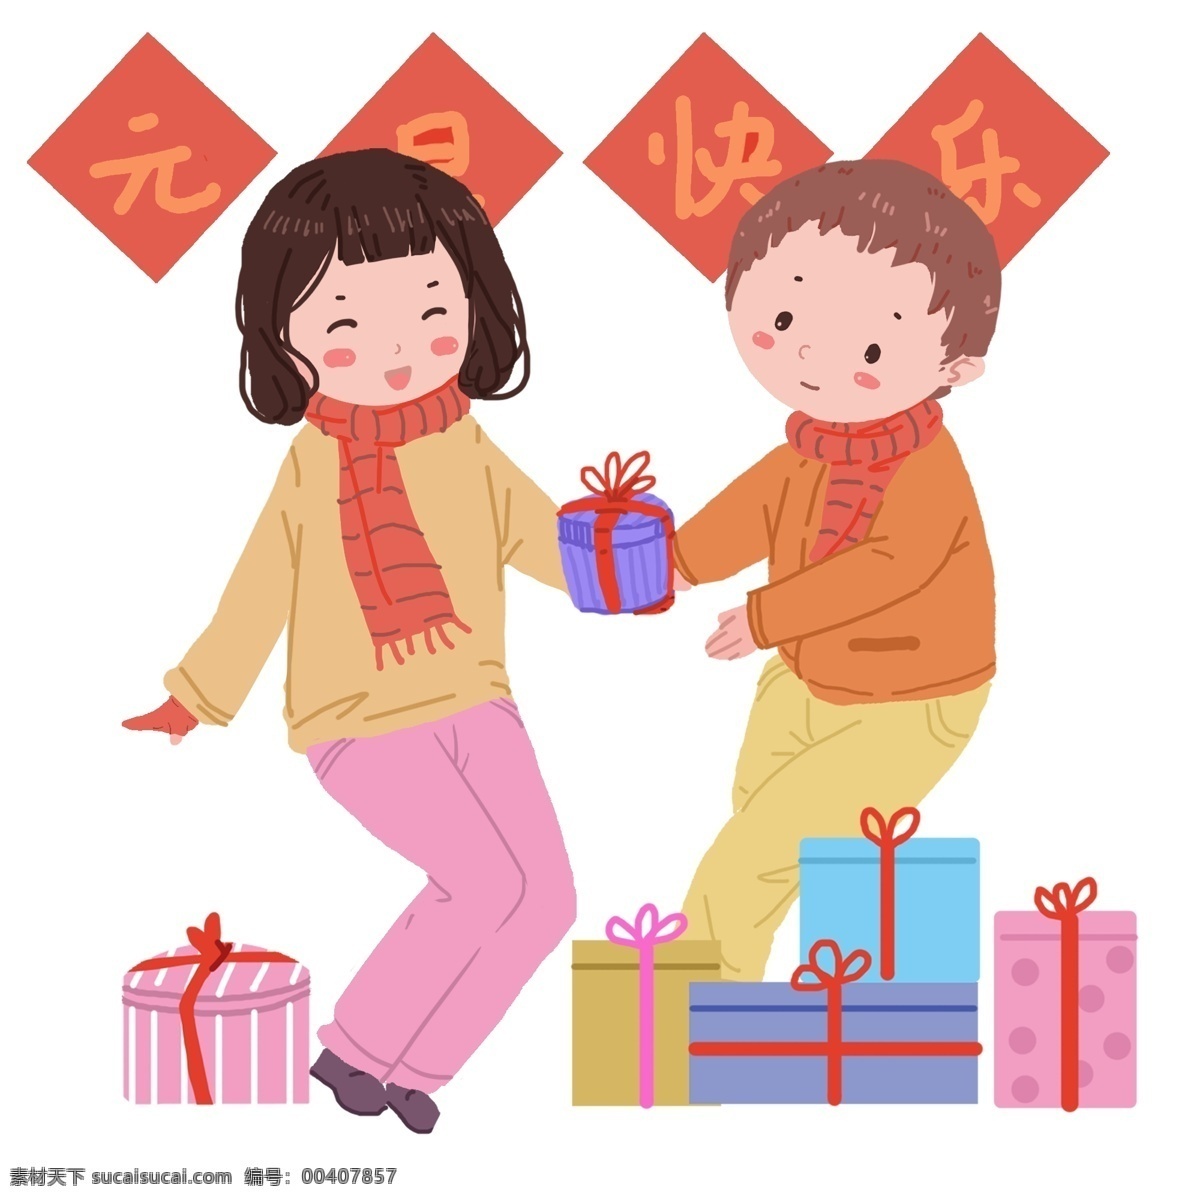 新年 家人 互 送 好 礼 元旦 2019年 温馨的家人 浅黄色 小 清新 风格 插图 包装 精美 礼物 互相 祝福